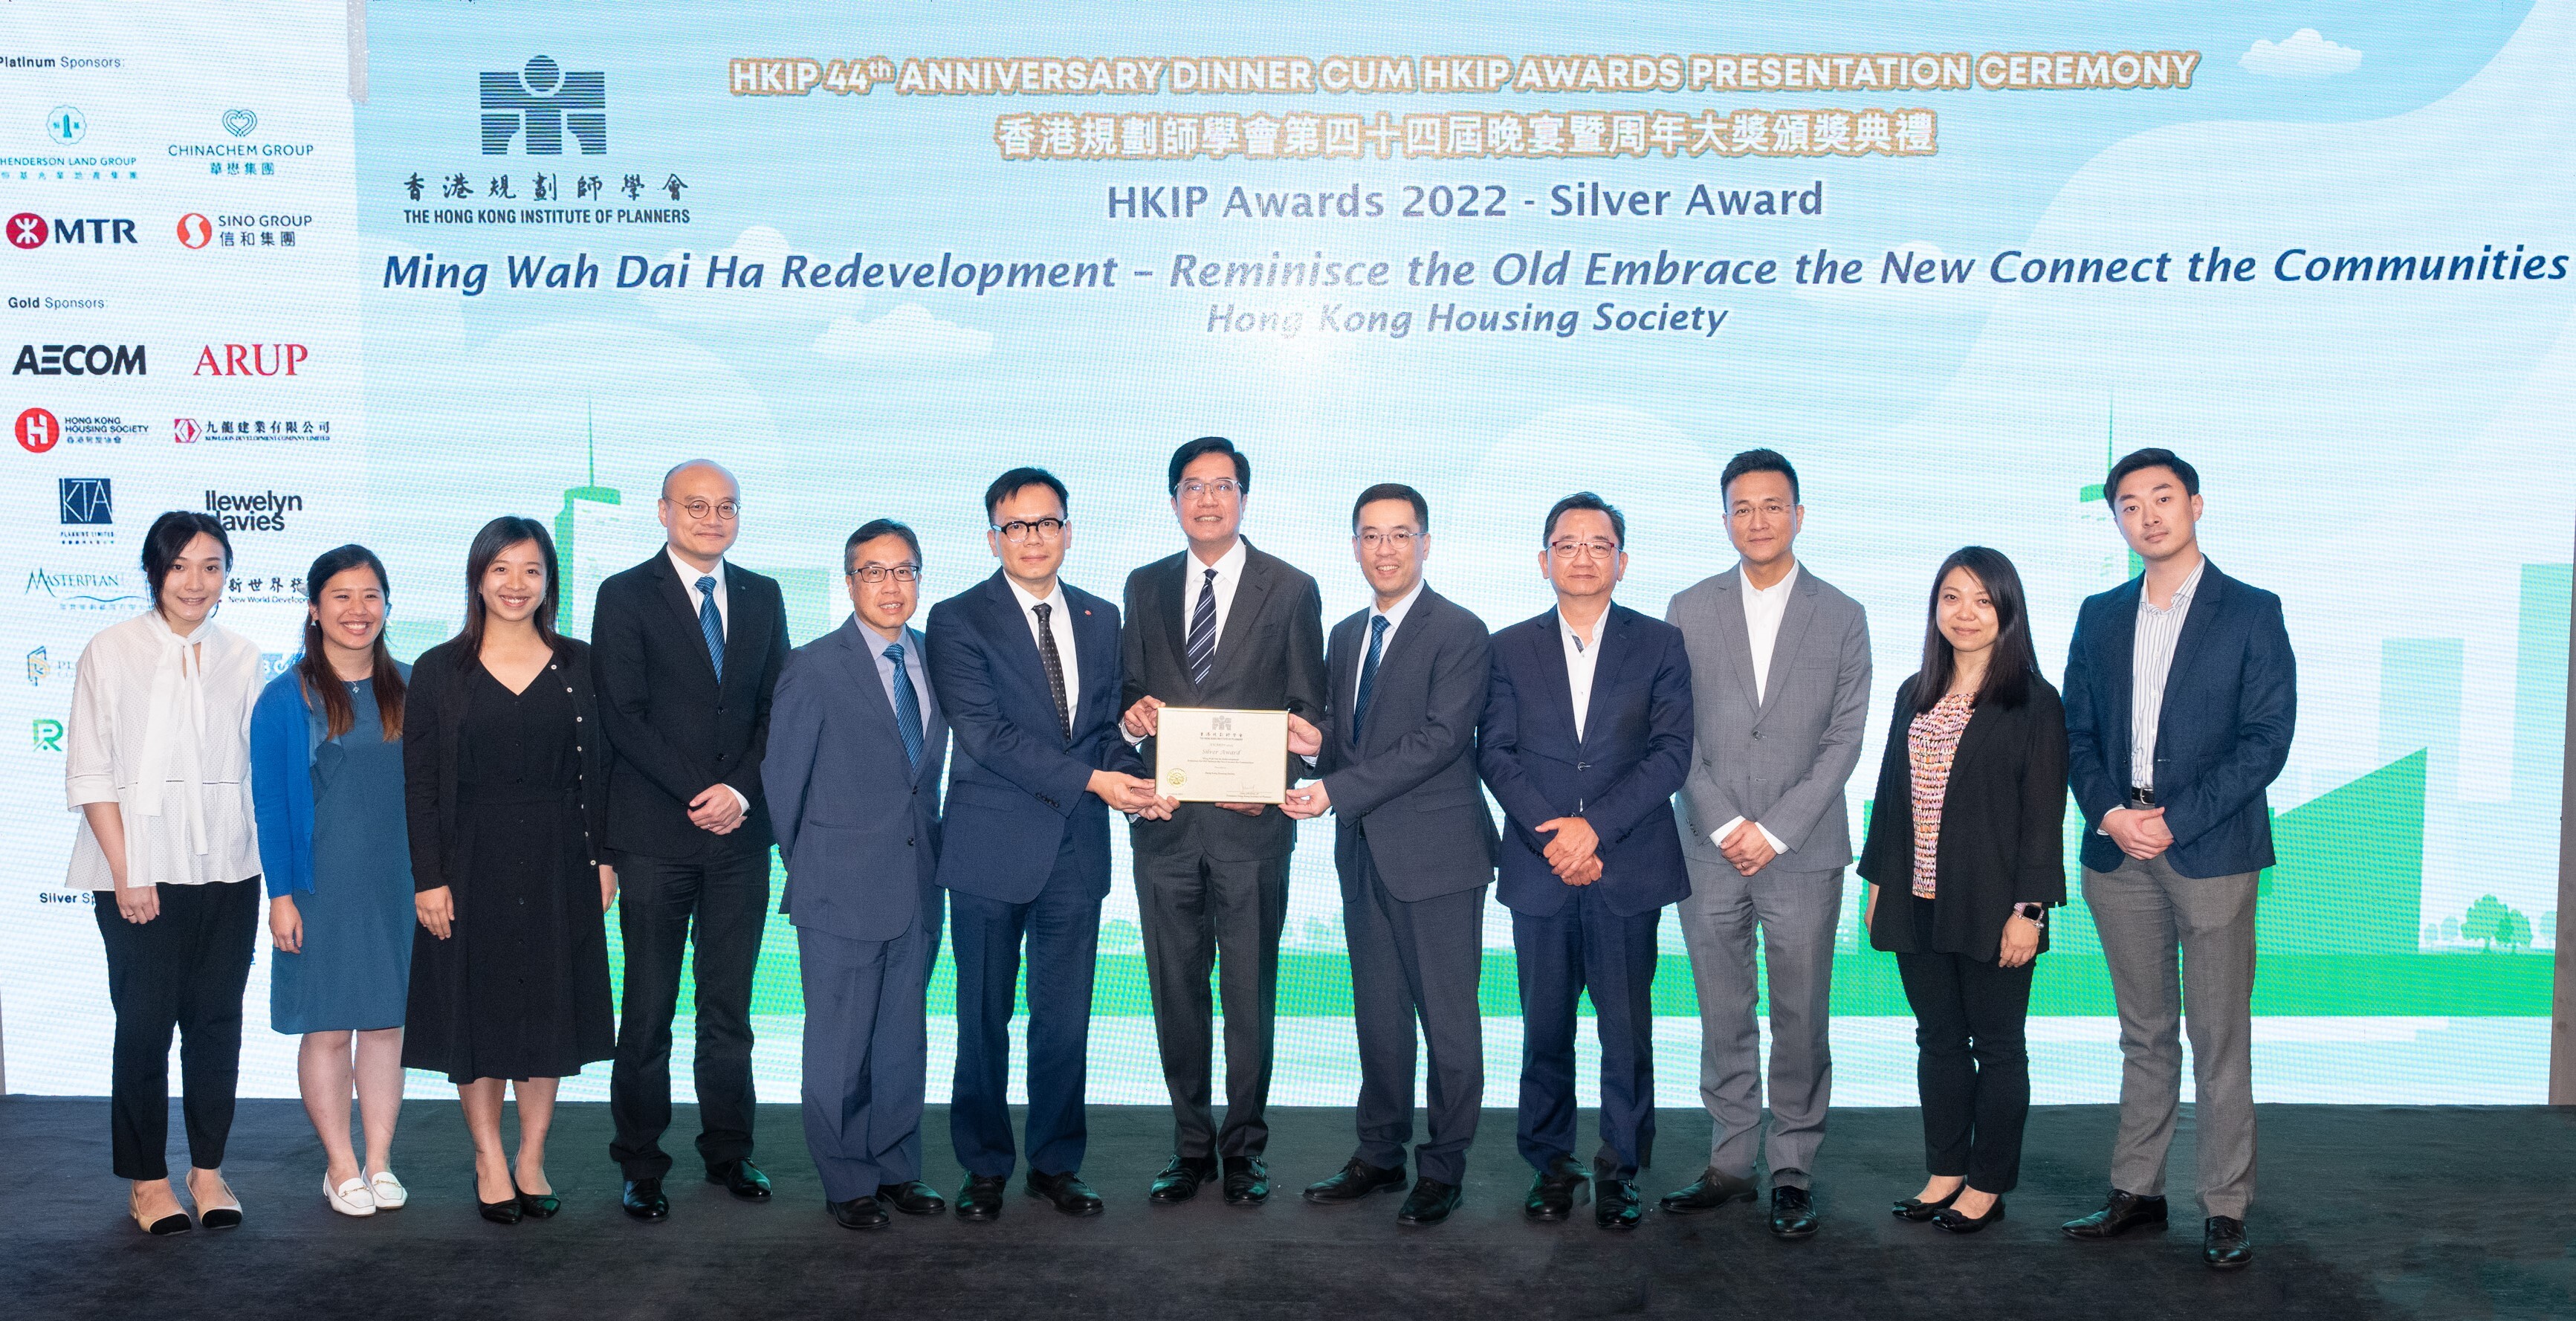 房协明华大厦第一期重建项目于「香港规划师学会周年大奬2022」中荣获该年度最高级别银奖。